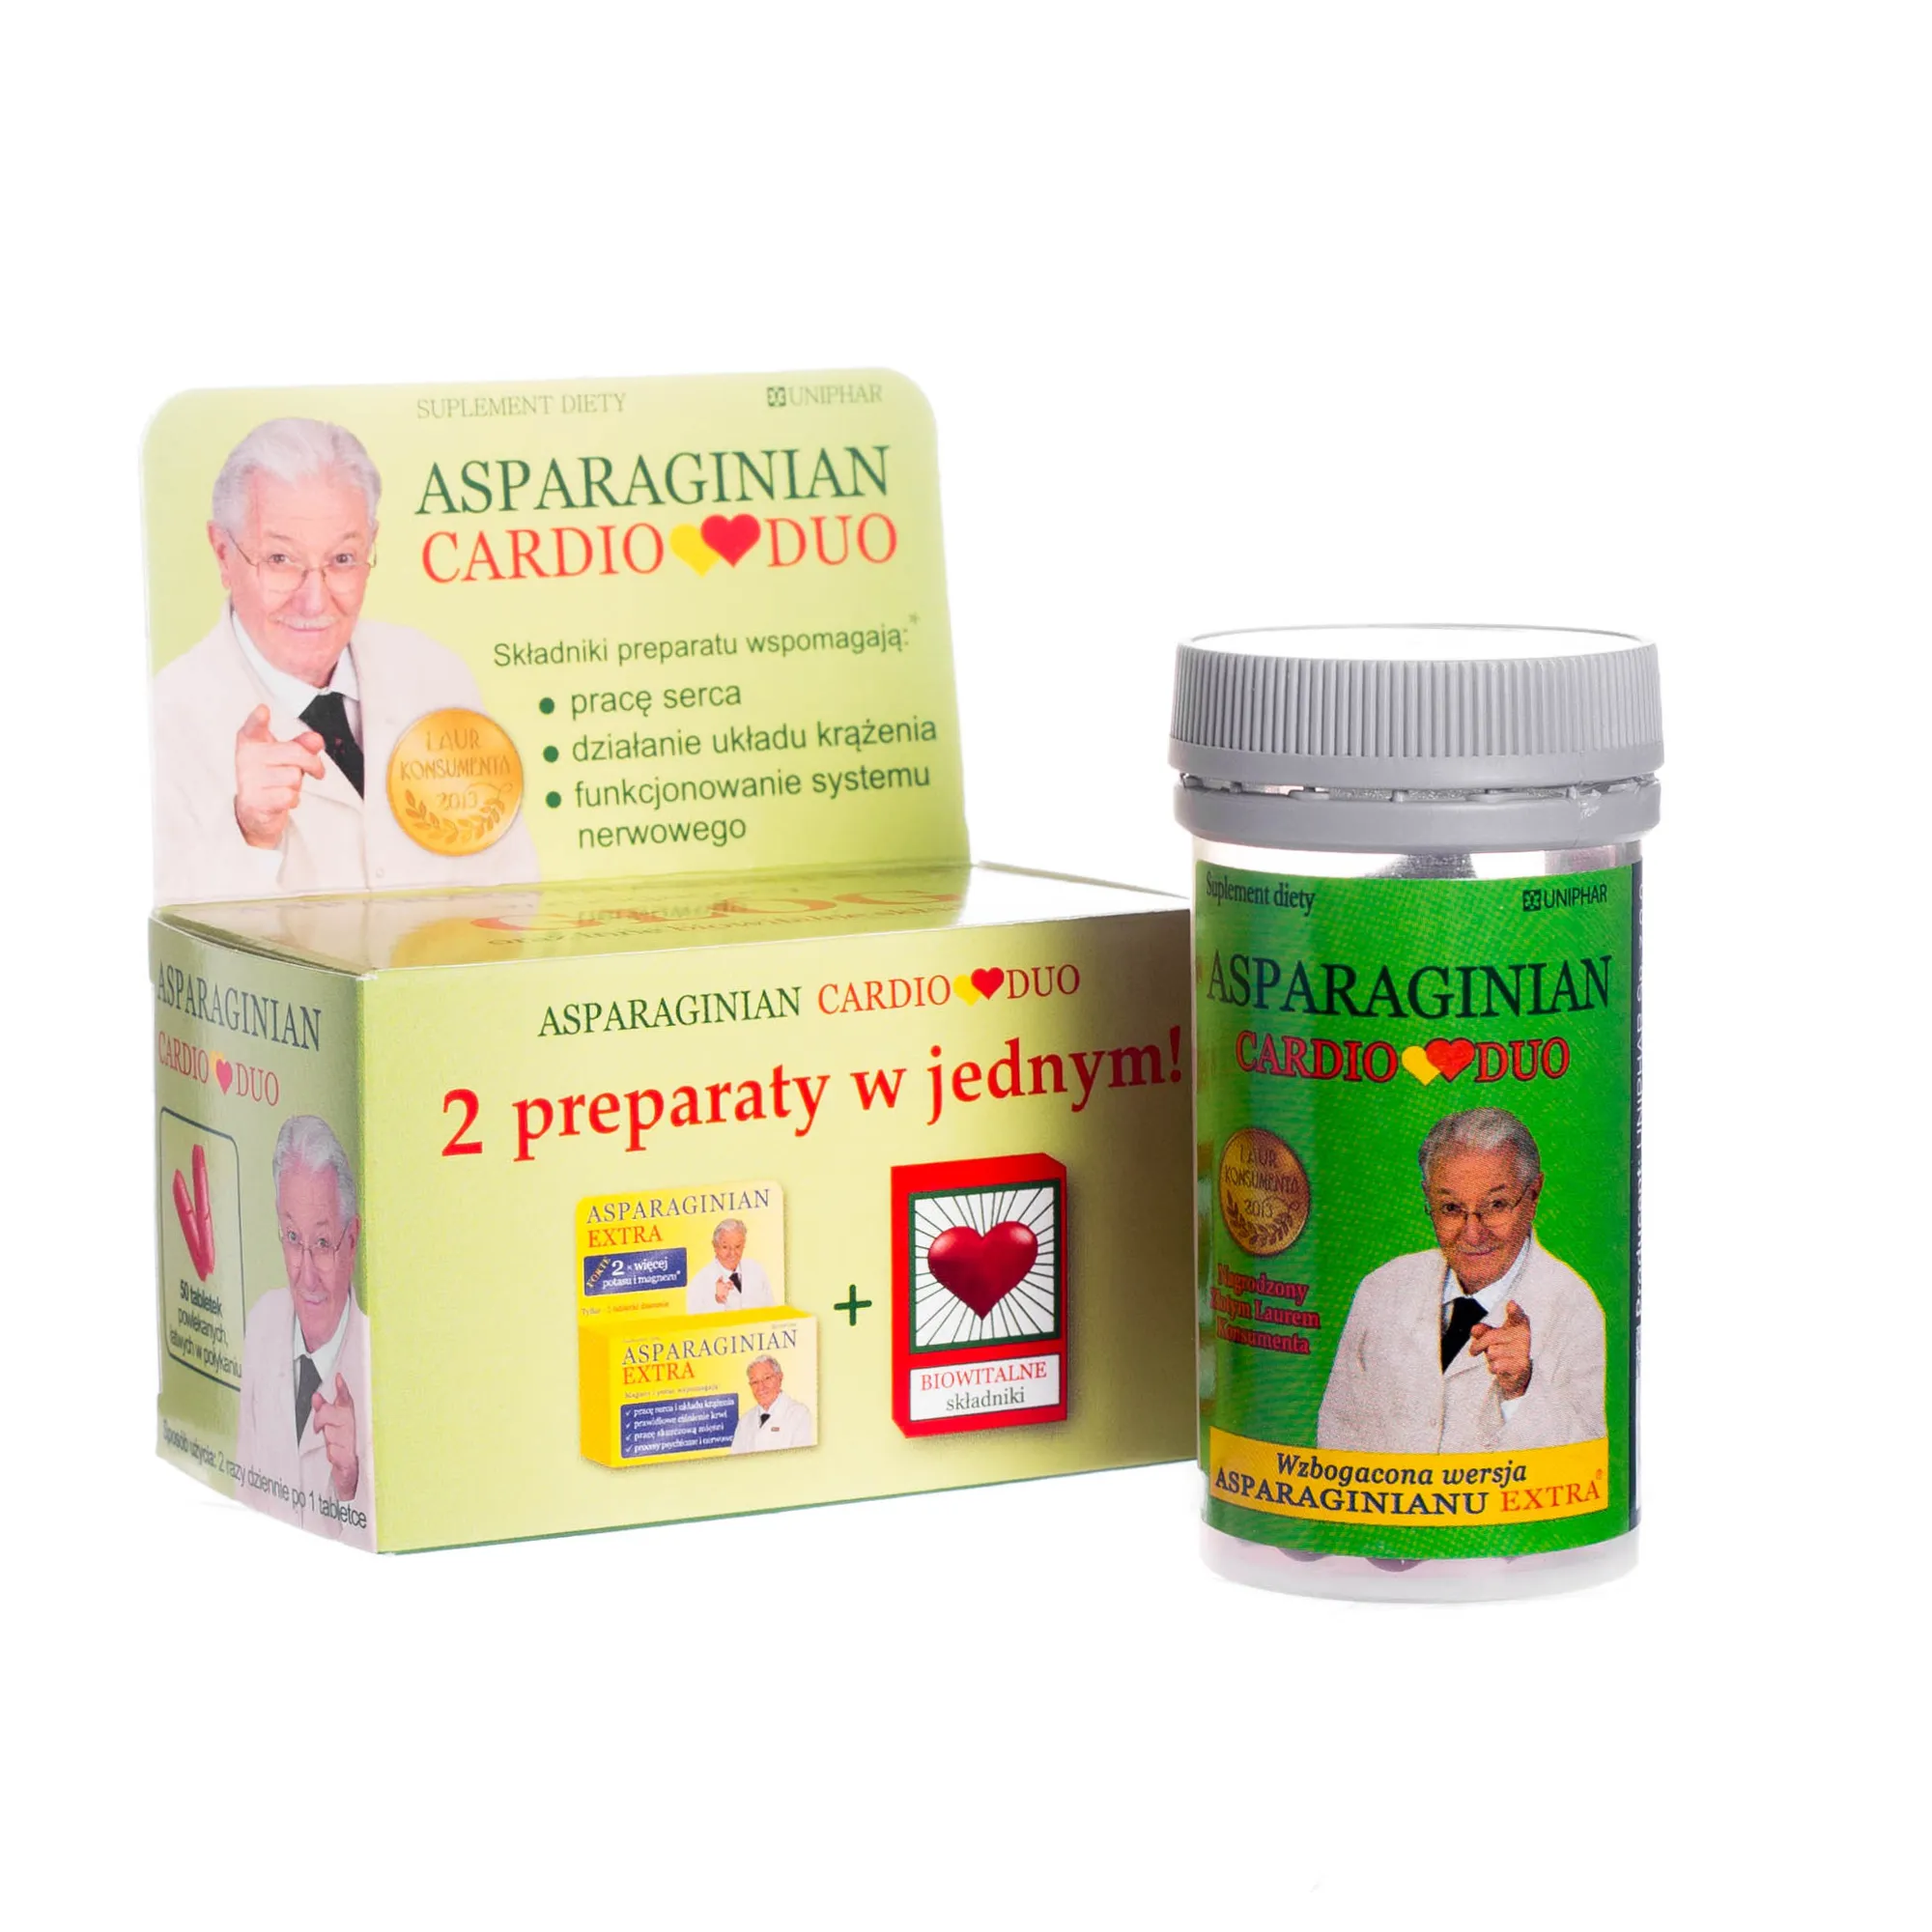 Asparaginian CardioDuo, suplement diety wzbogacony w głóg oraz inne biowitalne składniki, 50 tabletek